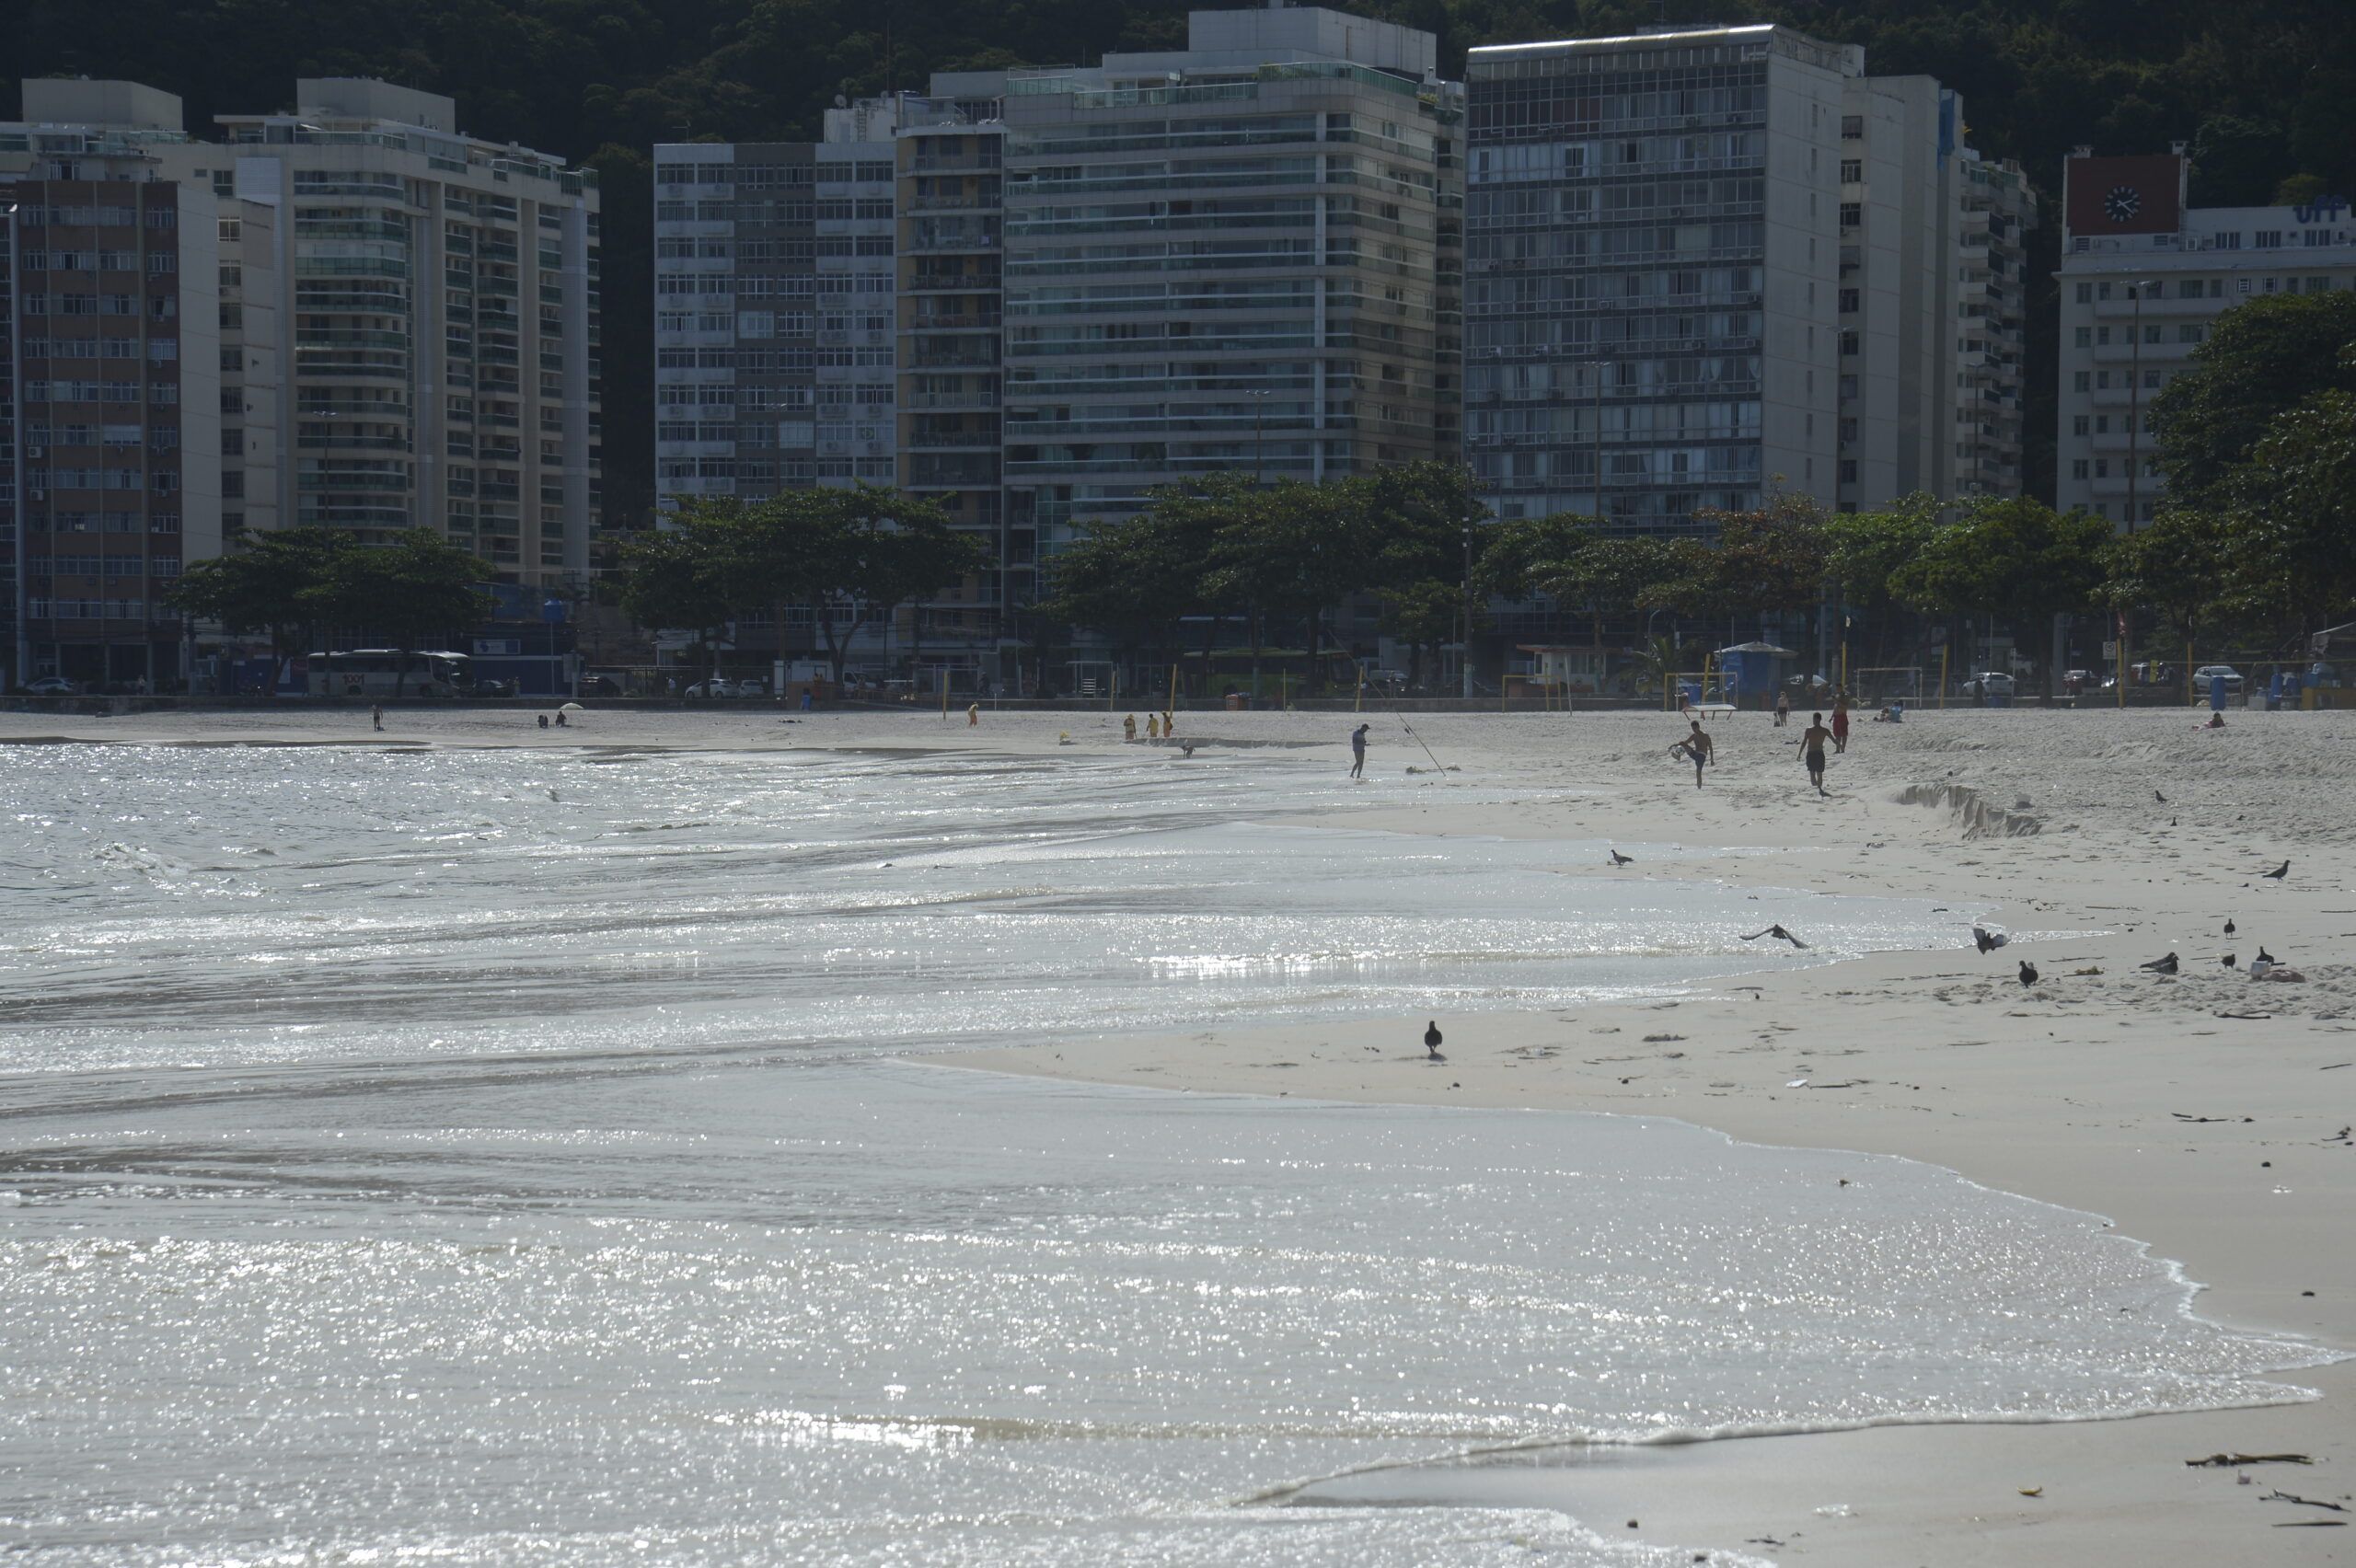 pesquisa da uff comprova existencia de superbacterias nas praias scaled